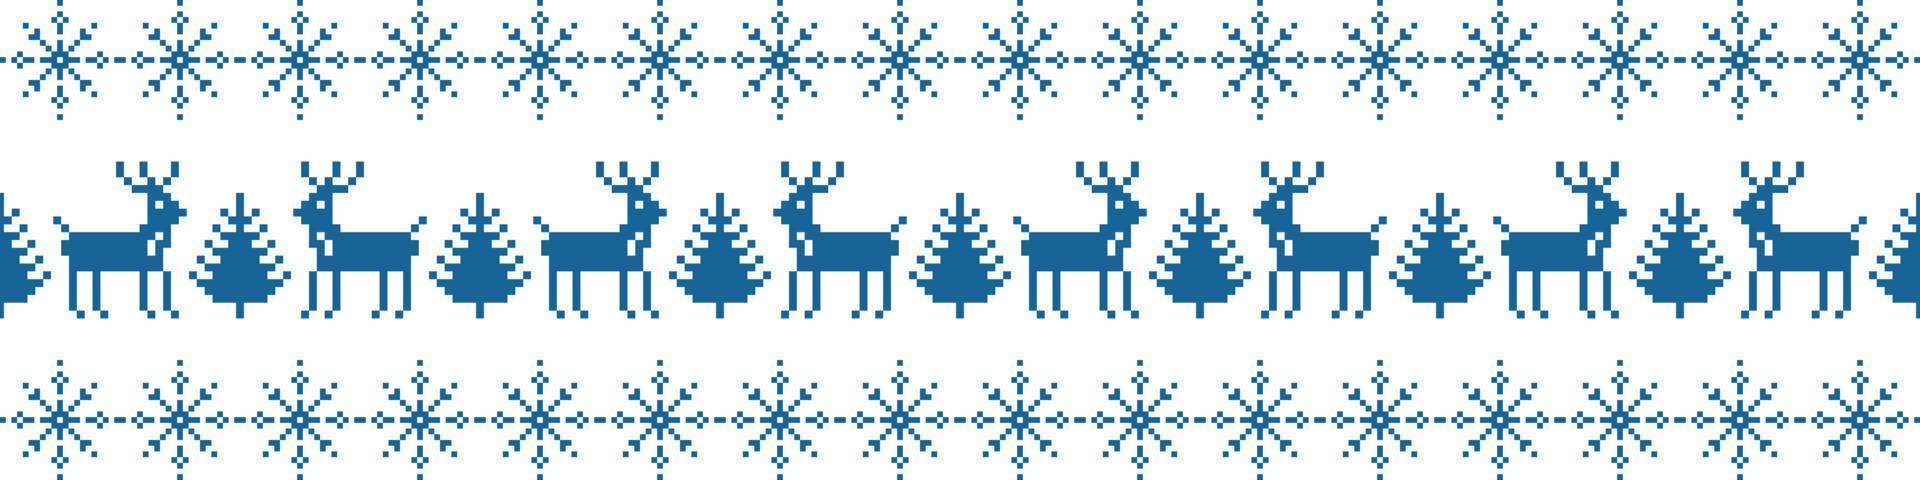 enfeite de natal listra pixel sem costura padrão. veado azul perto de árvores de ano novo. bordado na moda festivo com flocos de neve no estilo vetorial escandinavo. vetor